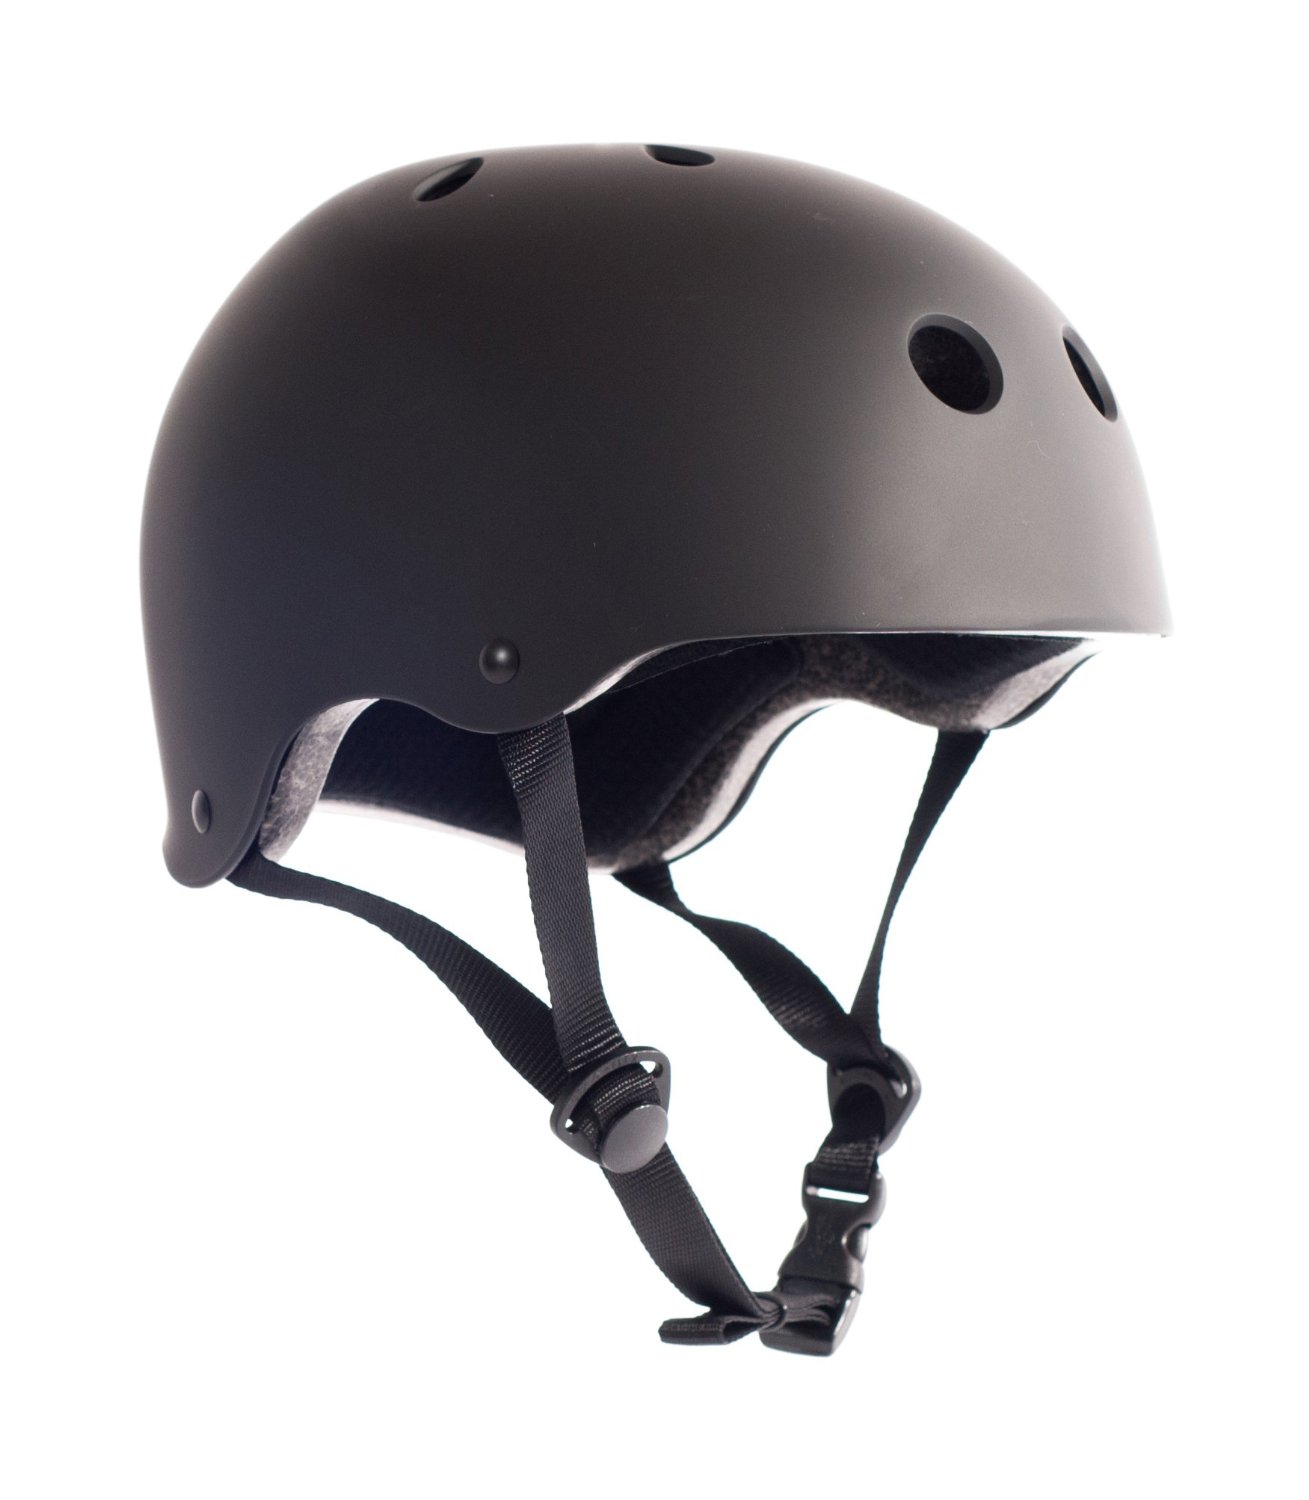 Bmx cycle helmets